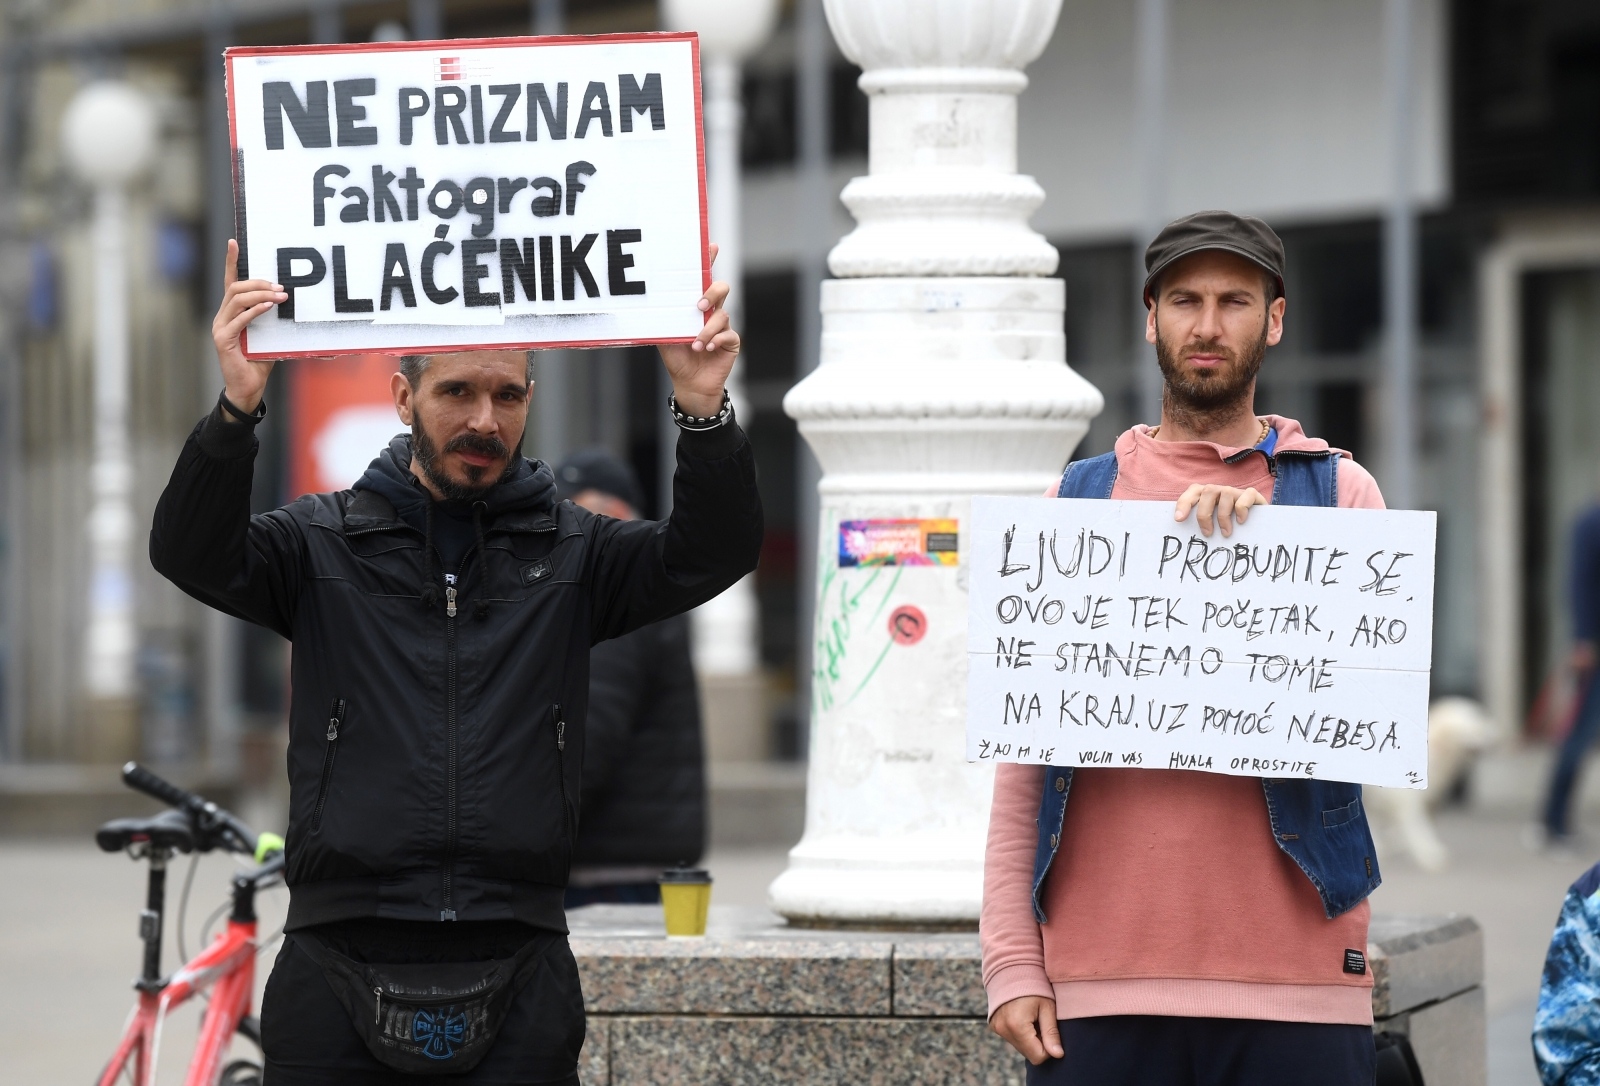 Danas je na Trgu bana Josipa Jelačića u Zagrebu održan prosvjed protiv 5G mreže i cijepljenja. Na prosvjedu se pojavila tek nekolicina ljudi, a Pixsellov fotograf snimio je i dvojicu koji su jedini držali natpise. Na jednom je pisalo "Ne priznam Faktograf plaćenike", a na drugom "Ljudi, probudite se. Ovo je tek početak, ako ne stanemo na tome na kraju. Uz pomoć nebesa". Prosvjed je osiguravalo nekoliko policajaca.